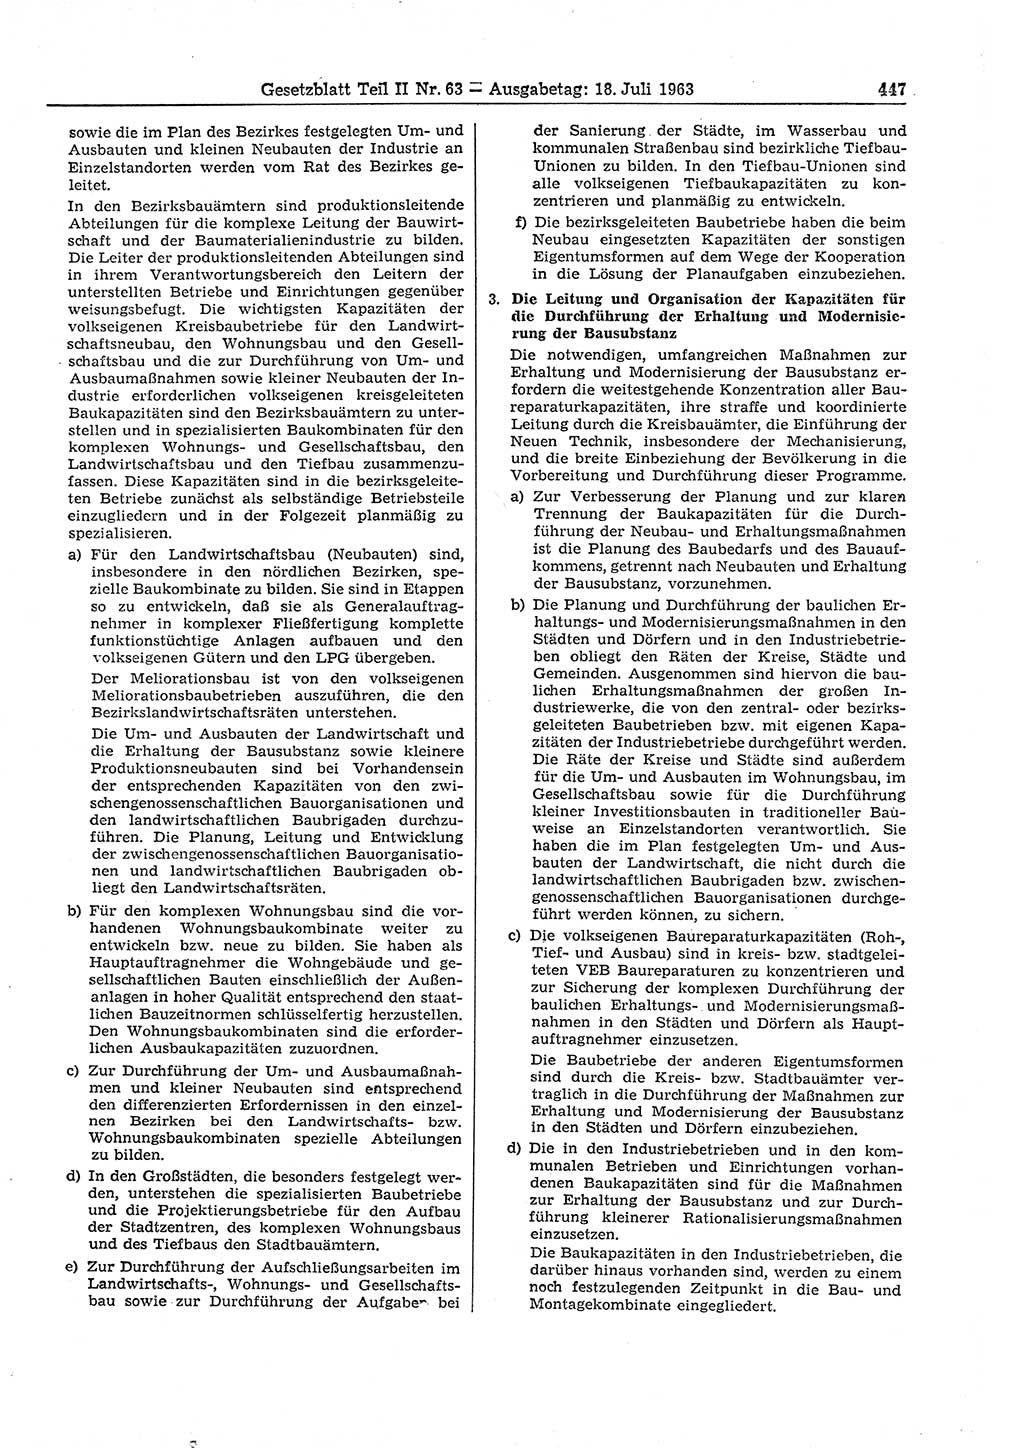 Gesetzblatt (GBl.) der Deutschen Demokratischen Republik (DDR) Teil ⅠⅠ 1963, Seite 447 (GBl. DDR ⅠⅠ 1963, S. 447)